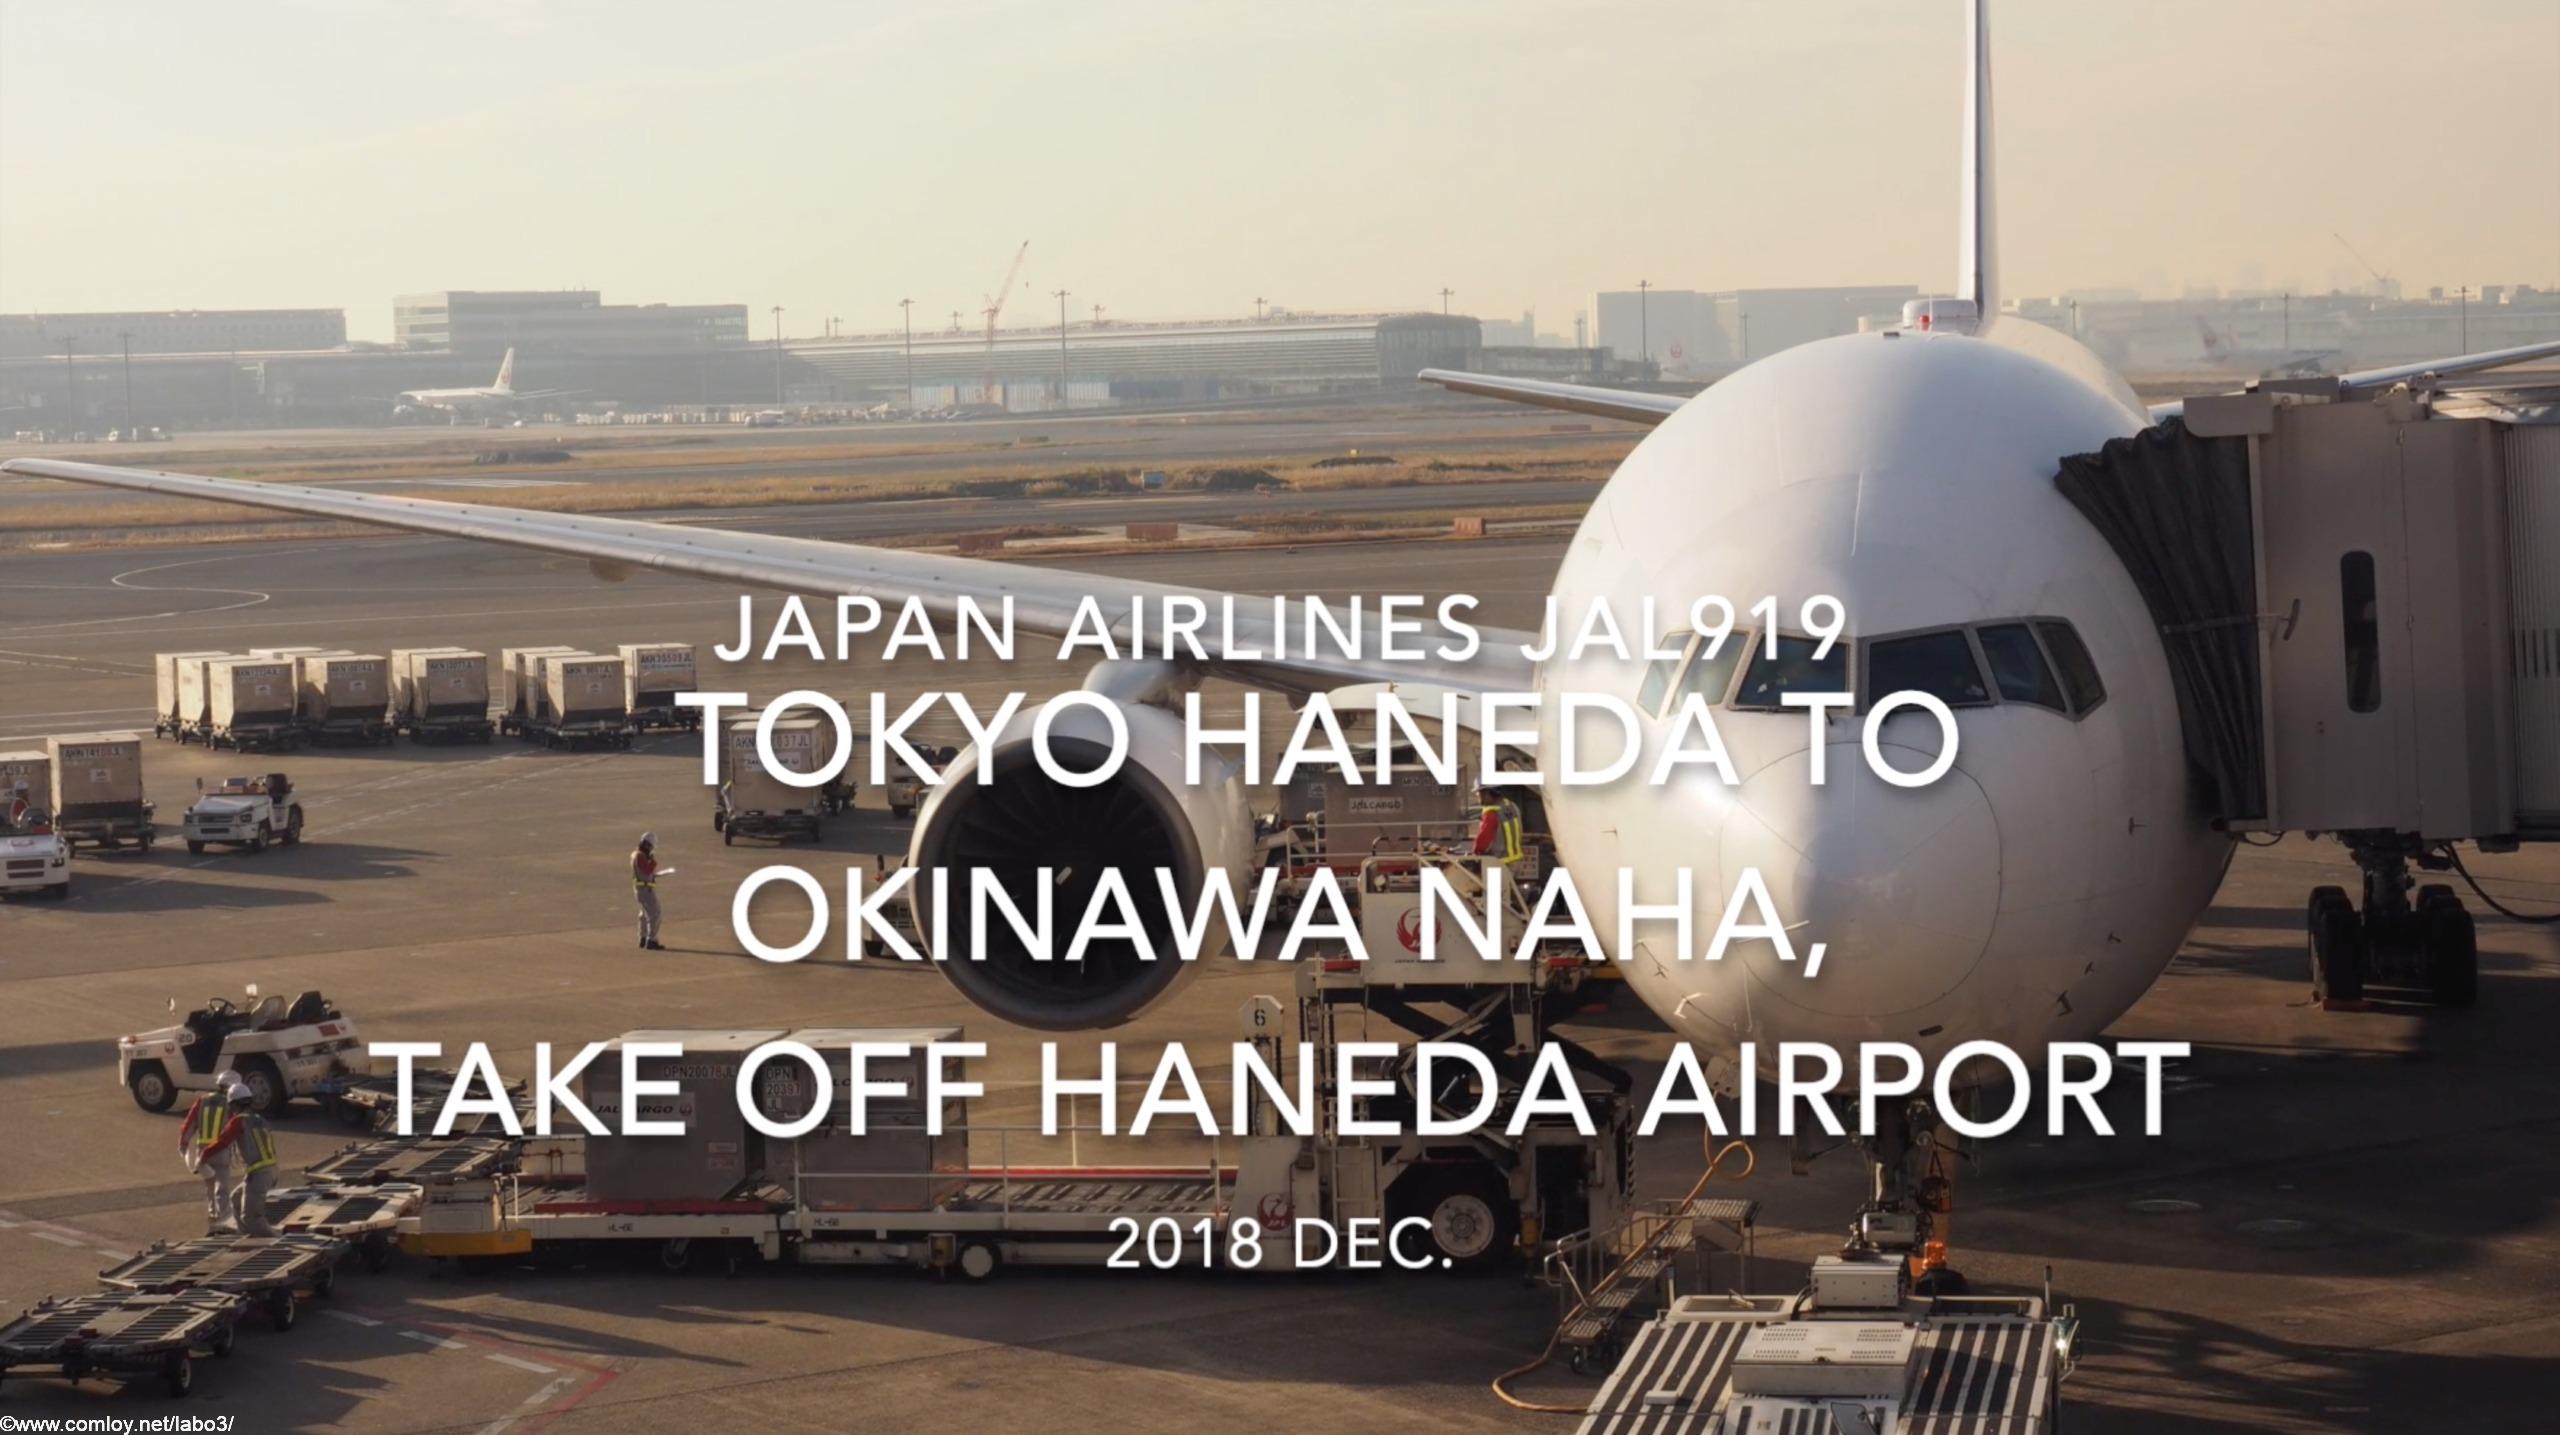 【機内から離着陸映像】2018 Dec. JAPAN Airlines JAL919 TOKYO HANEDA to OKINAWA NAHA, Take off HANEDA Airport 日本航空 羽田 - 那覇 羽田空港離陸